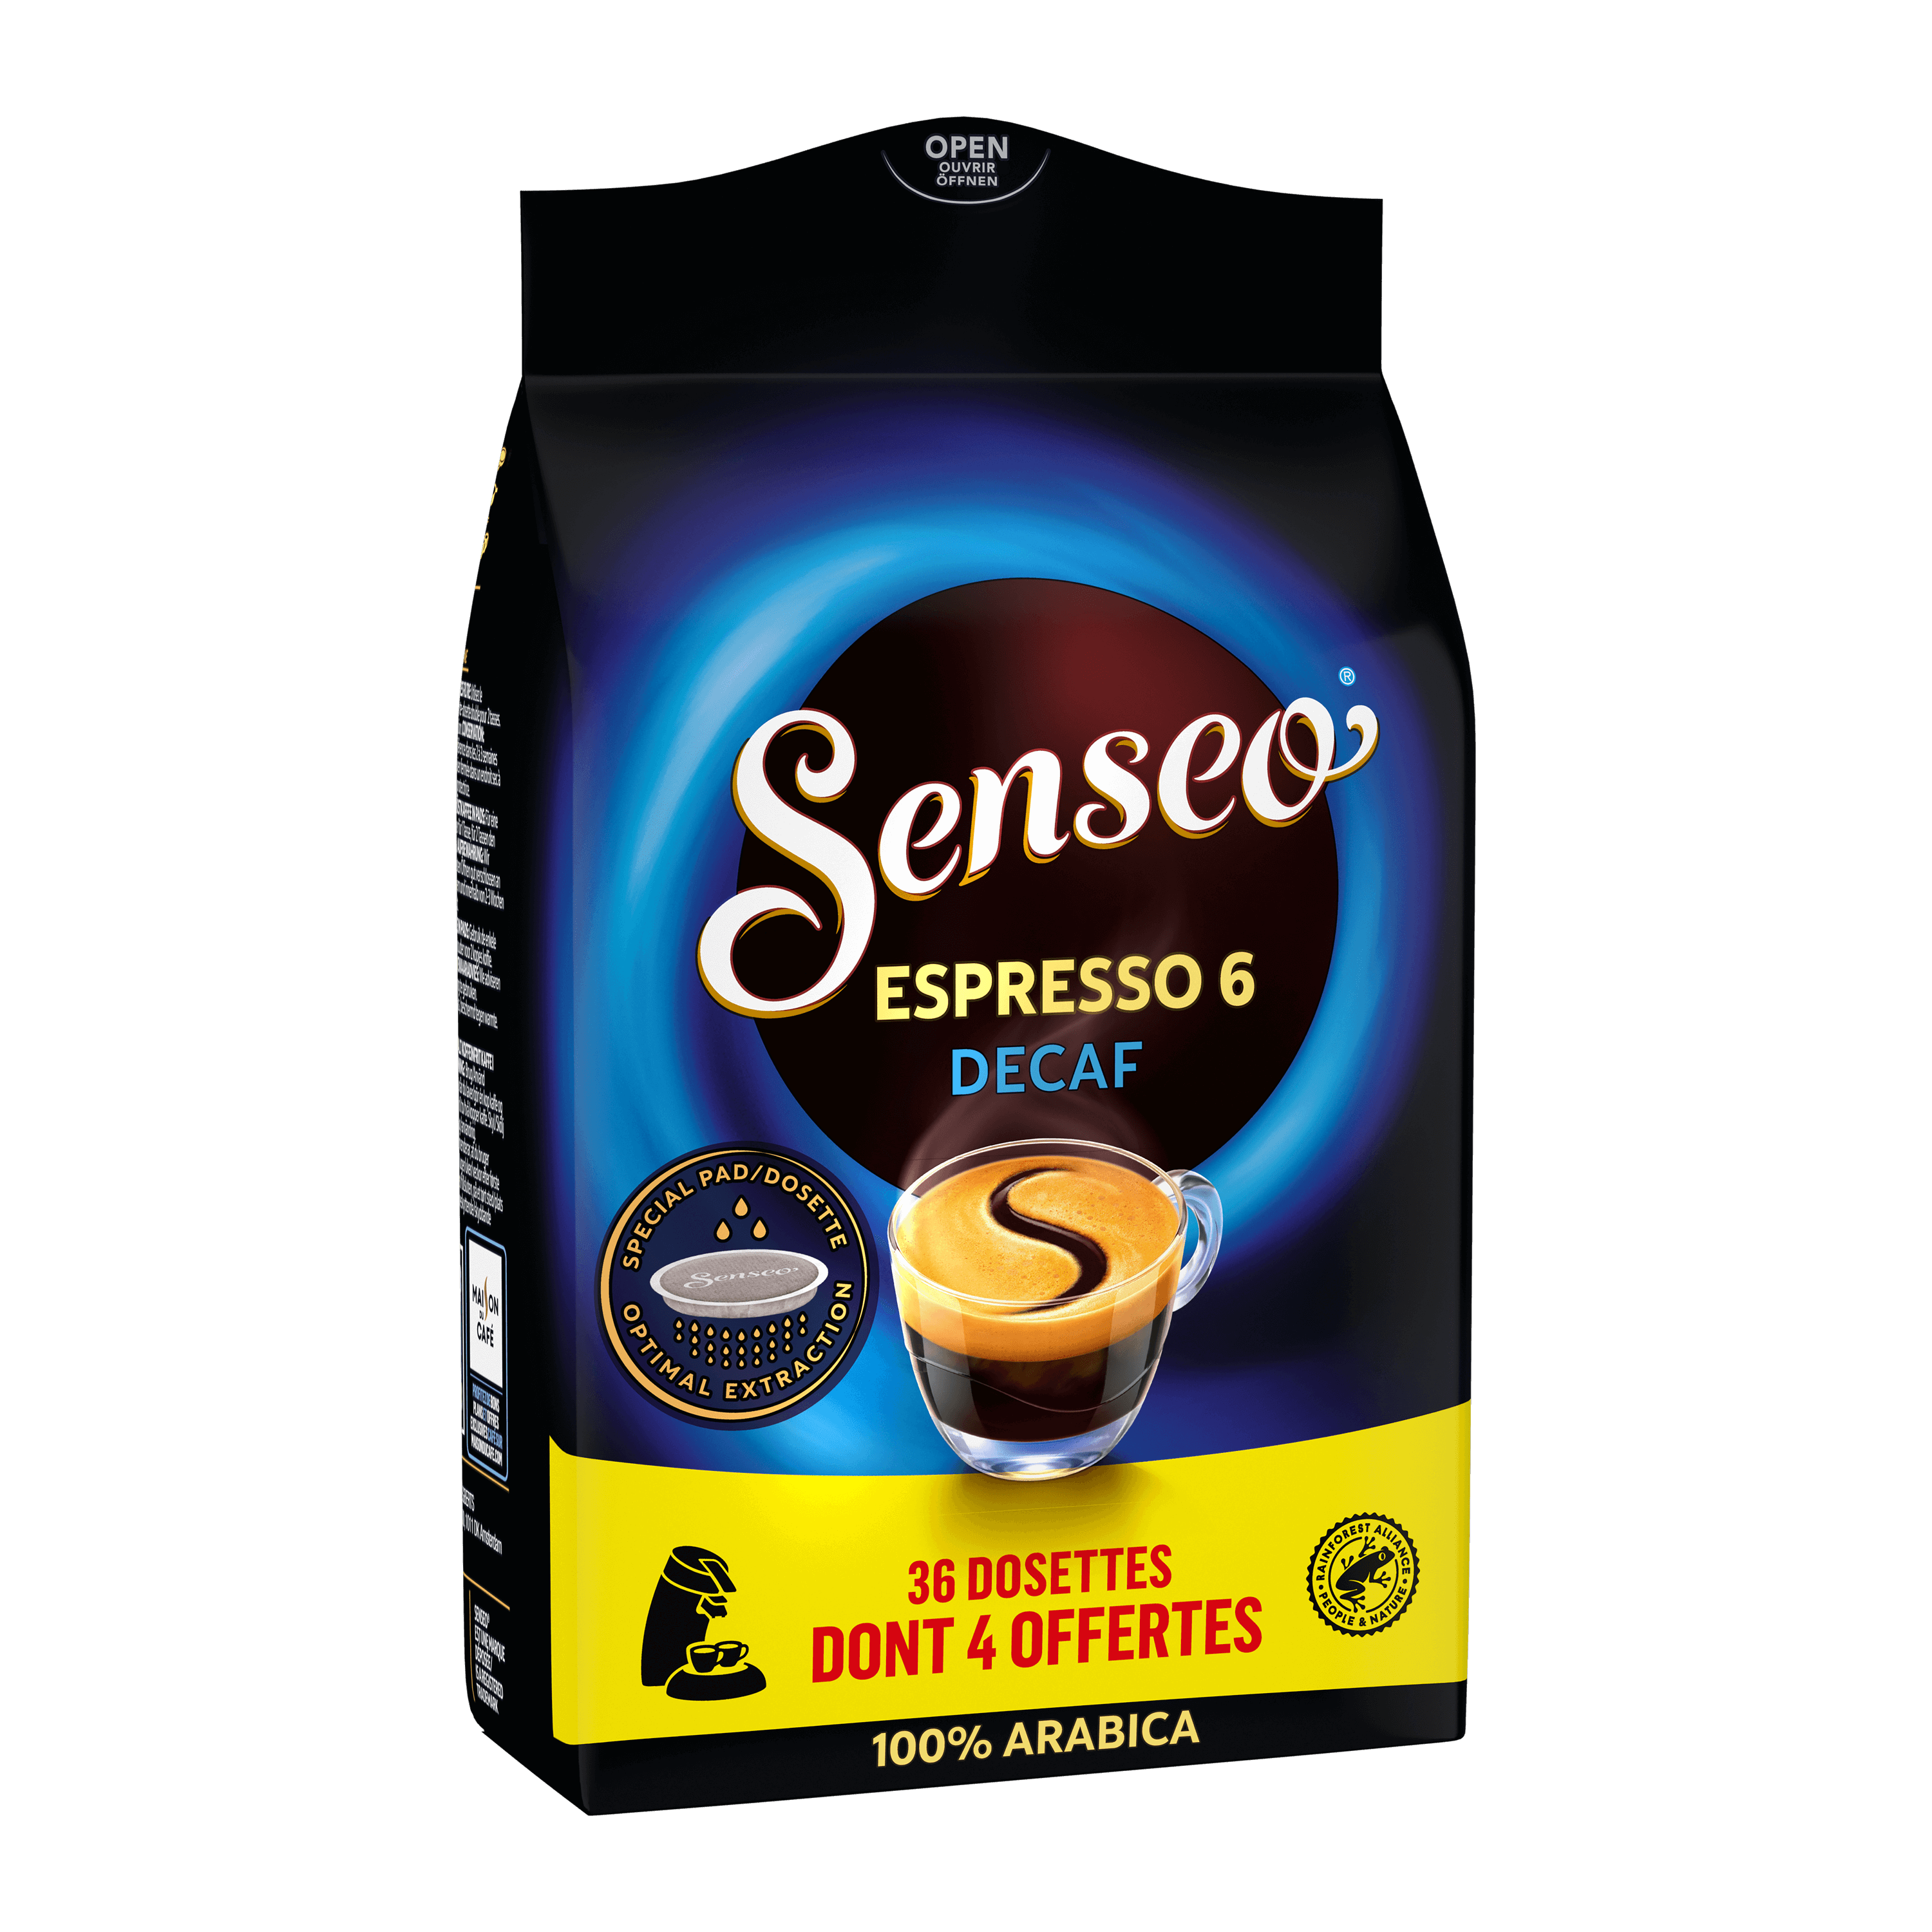 Senseo Café Latte (Tasse simple) - 8 dosettes pour Senseo à 2,29 €